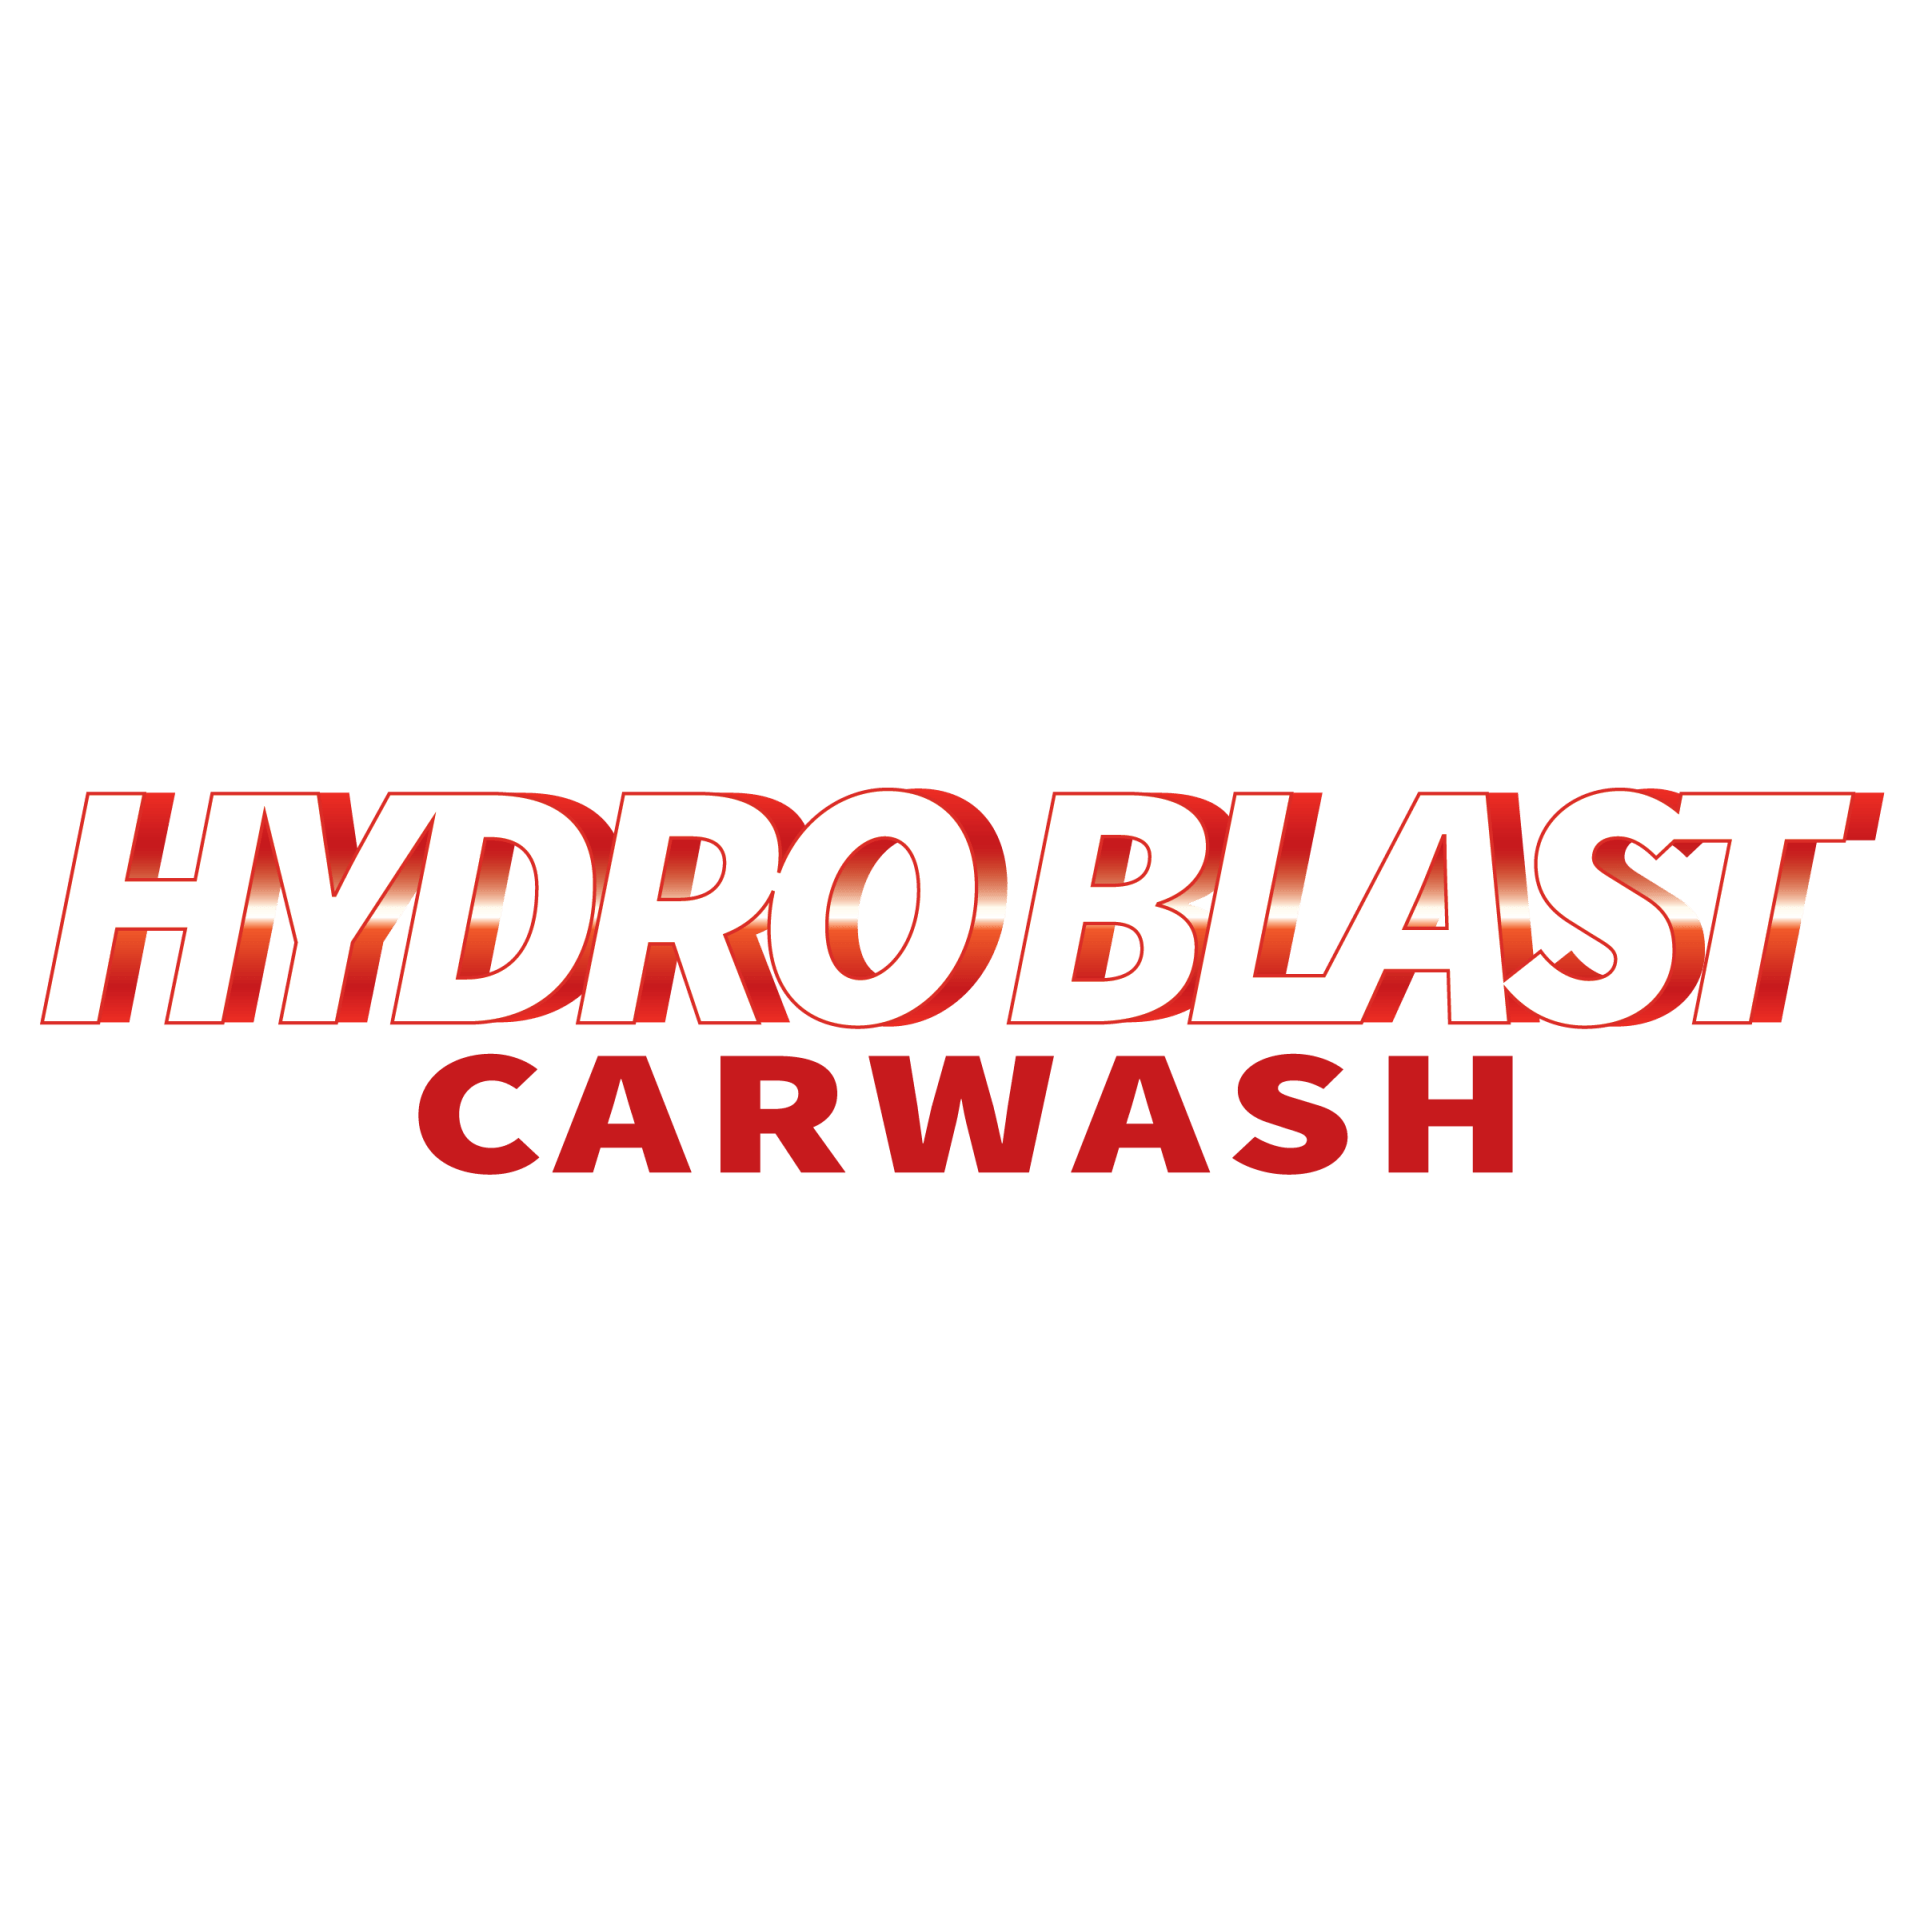 hydroblast carwash logo